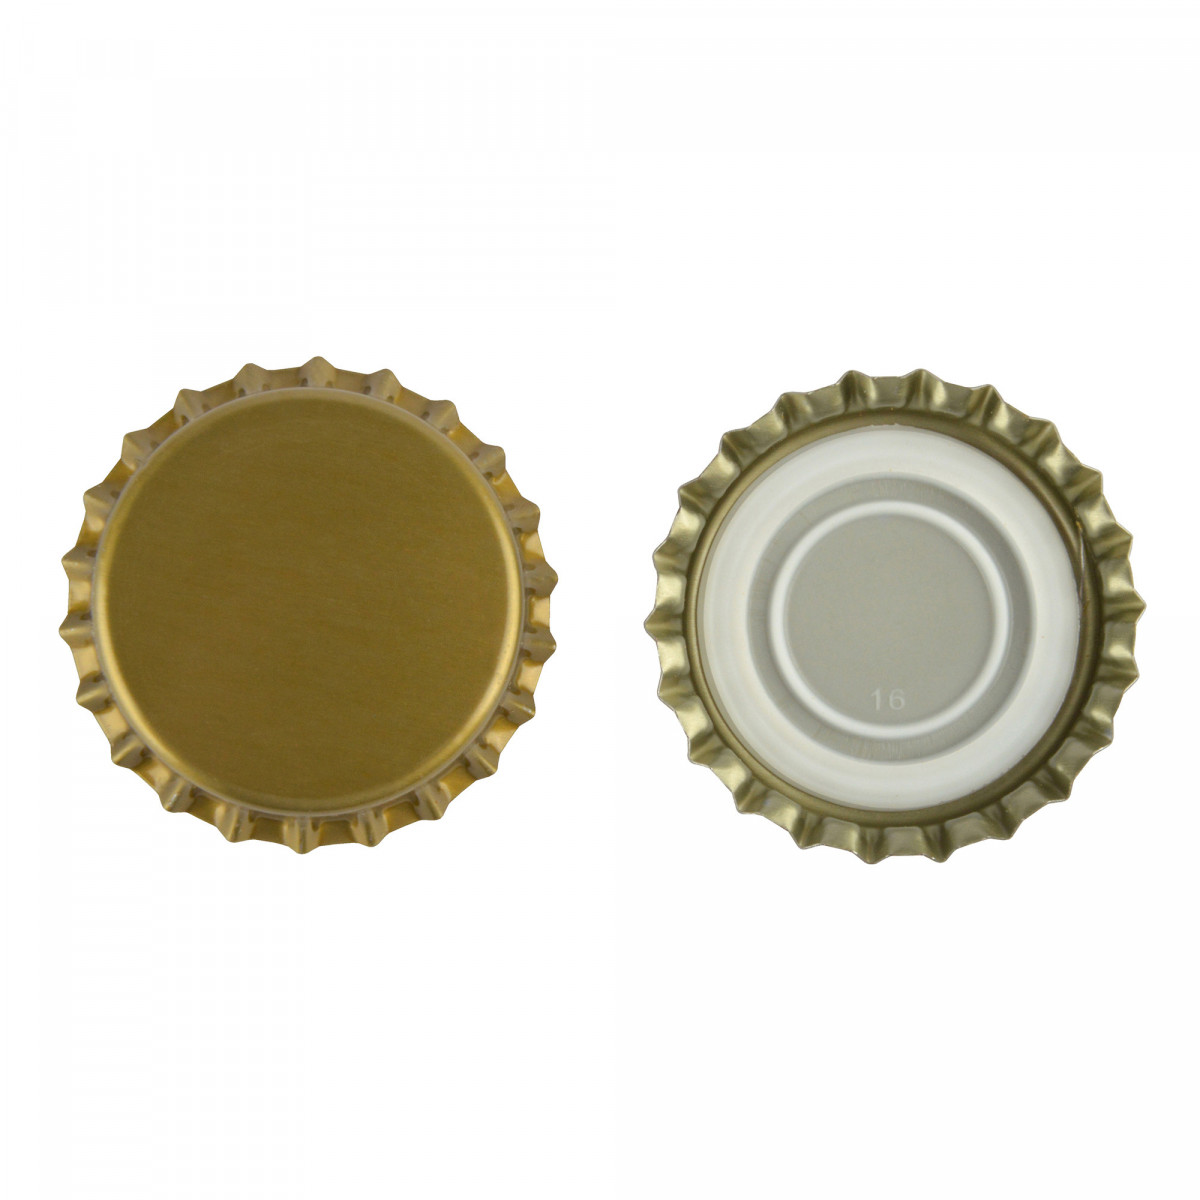 Capsules de bière 29 mm or - encart profilé - 100 pcs